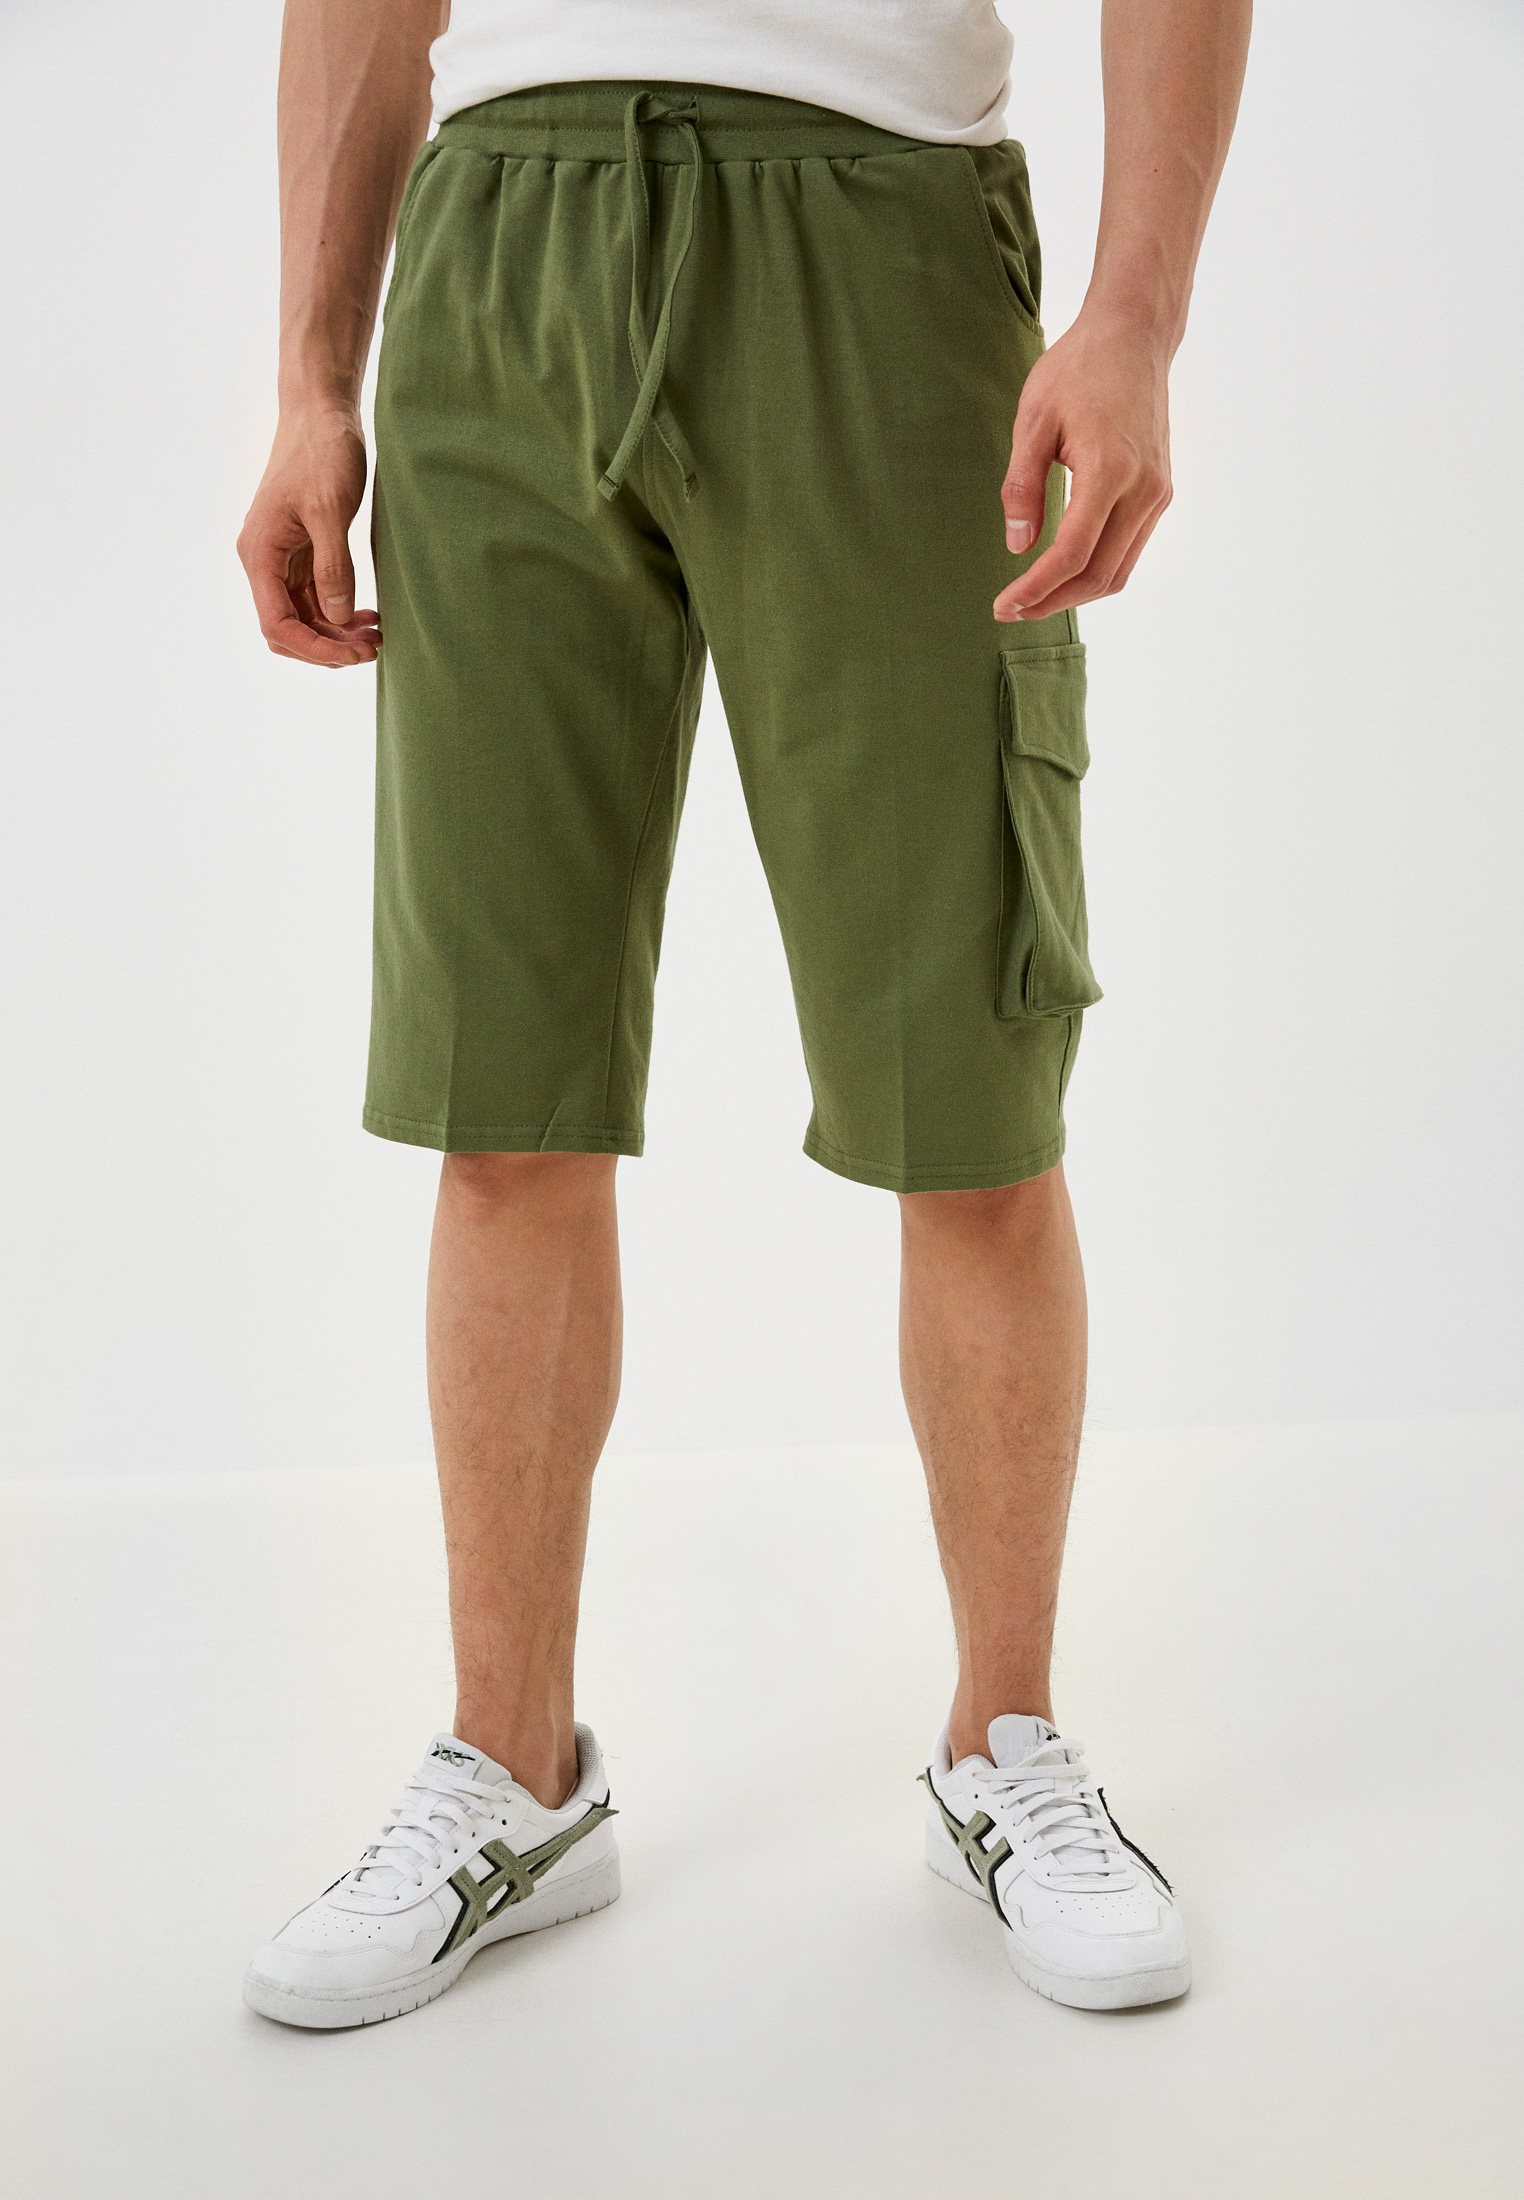 Трикотажные шорты мужские N.O.A. 20989 зеленые 48 RU